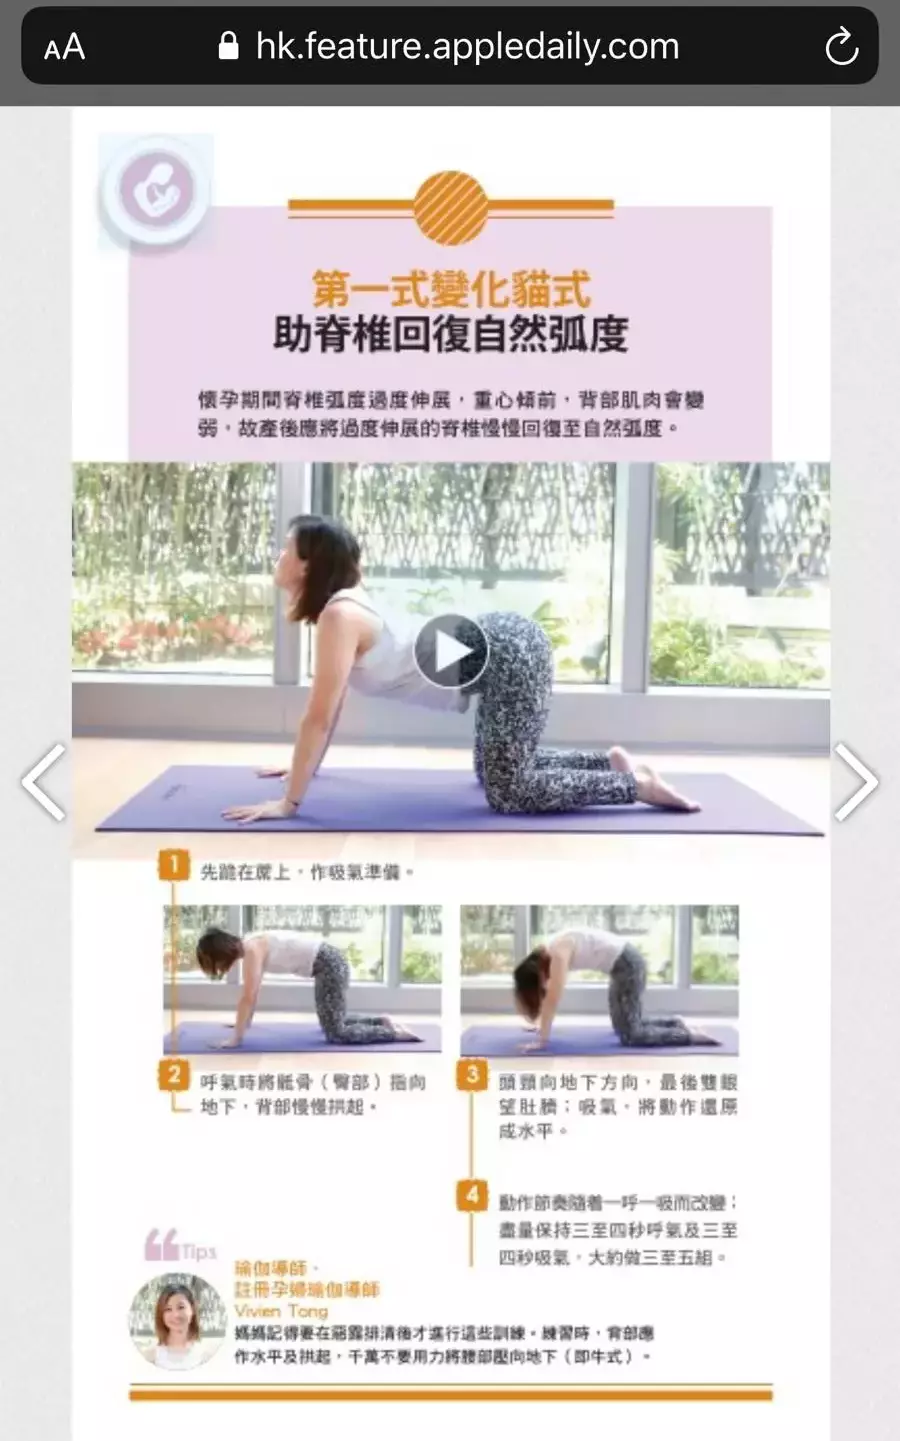 Tapas Yoga Hong Kong Yuen Long Yoga 一念瑜伽 元朗瑜伽 Teacher